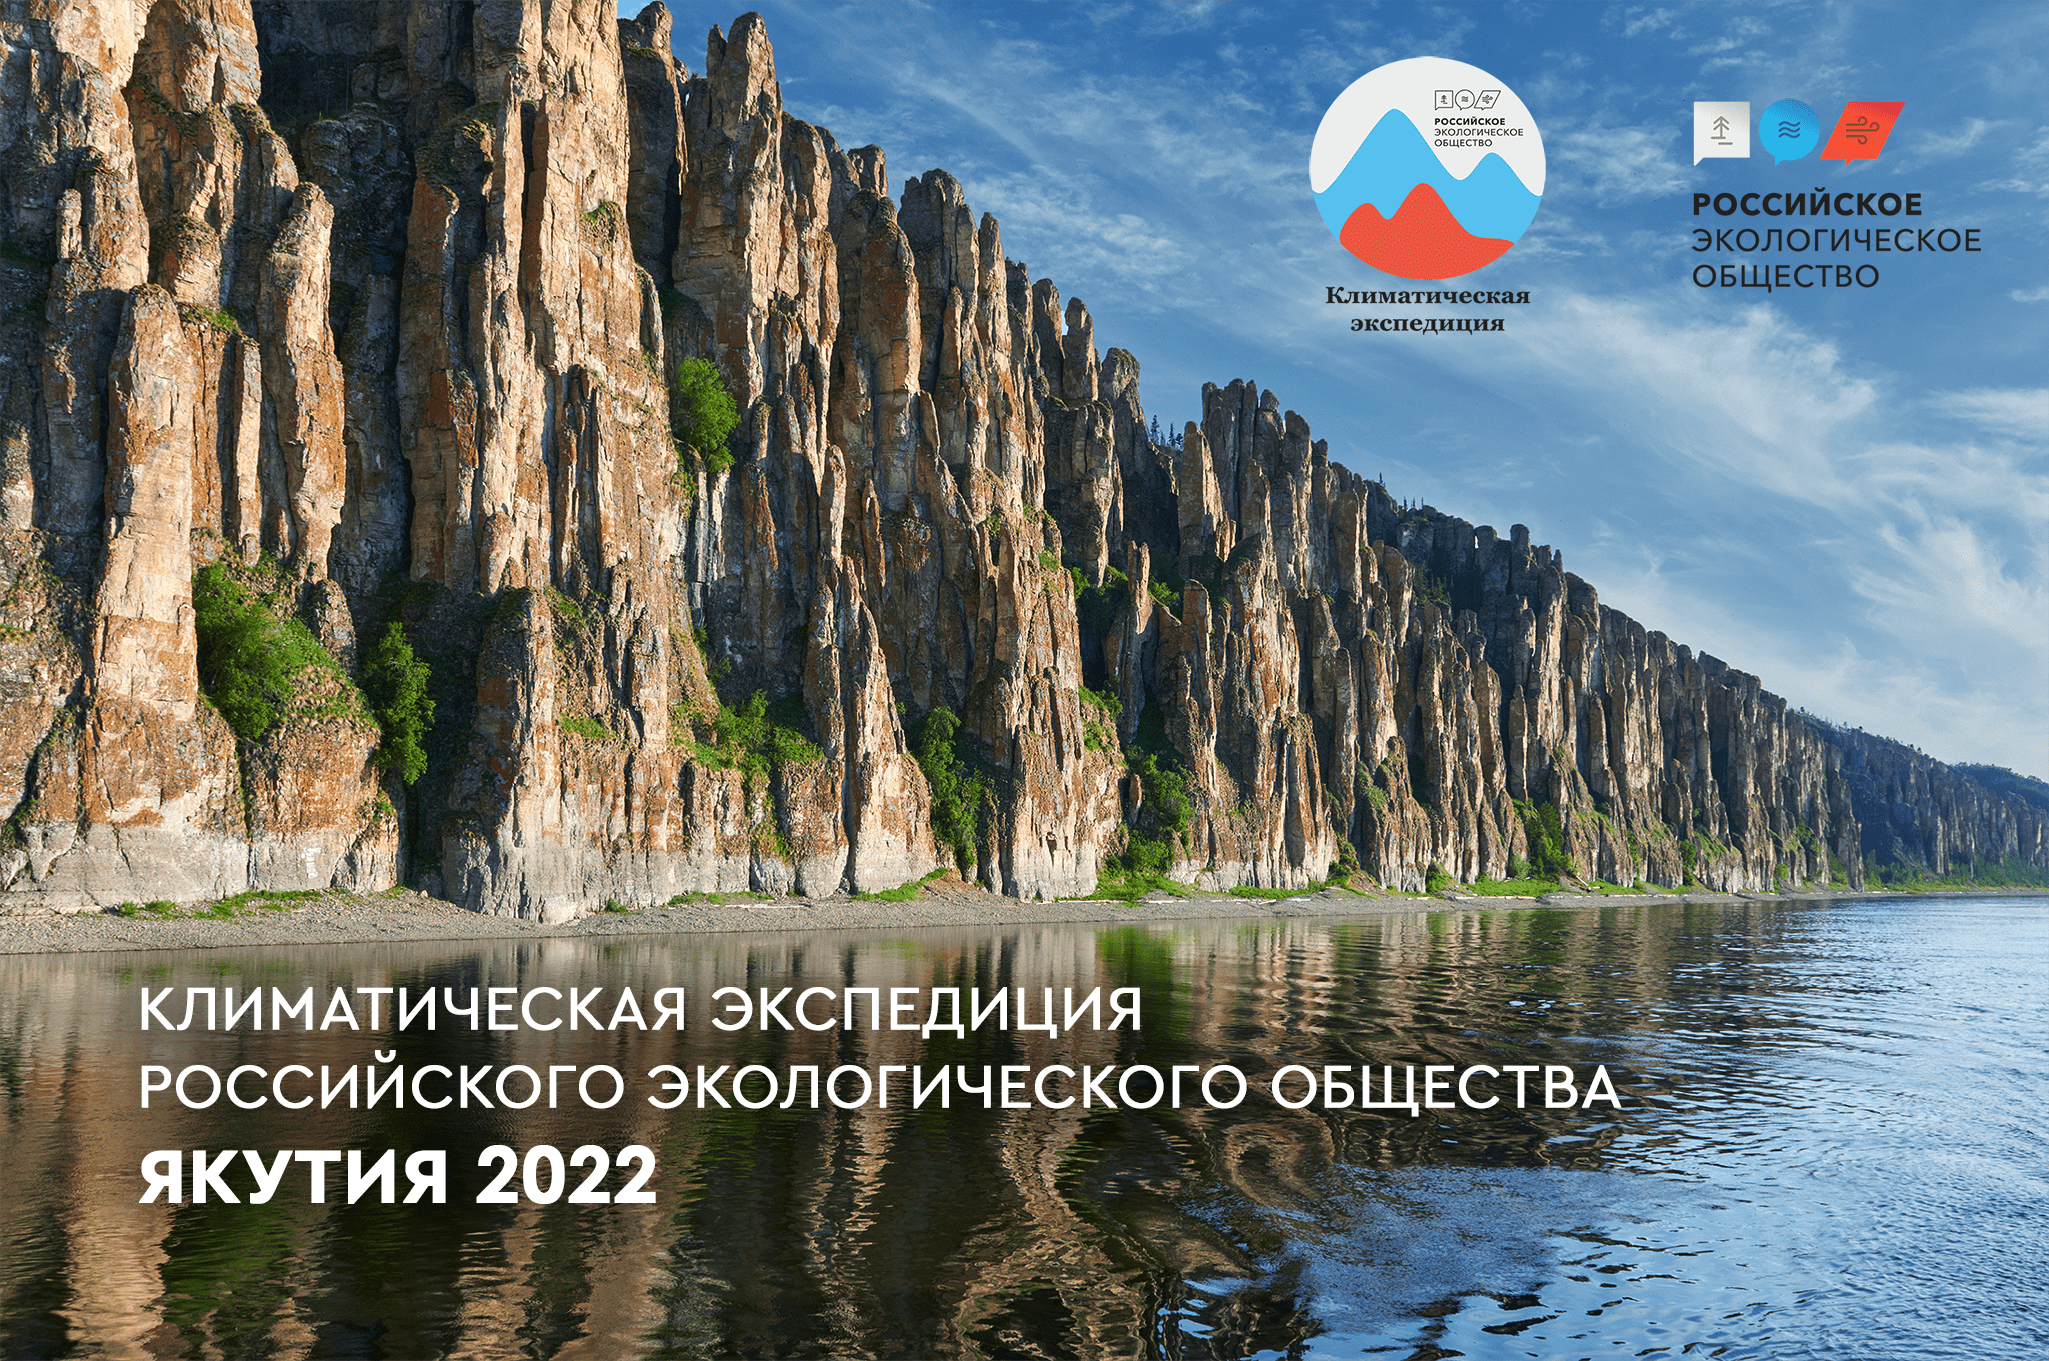 Первая Климатическая экспедиция в Якутии состоится в 2022 году